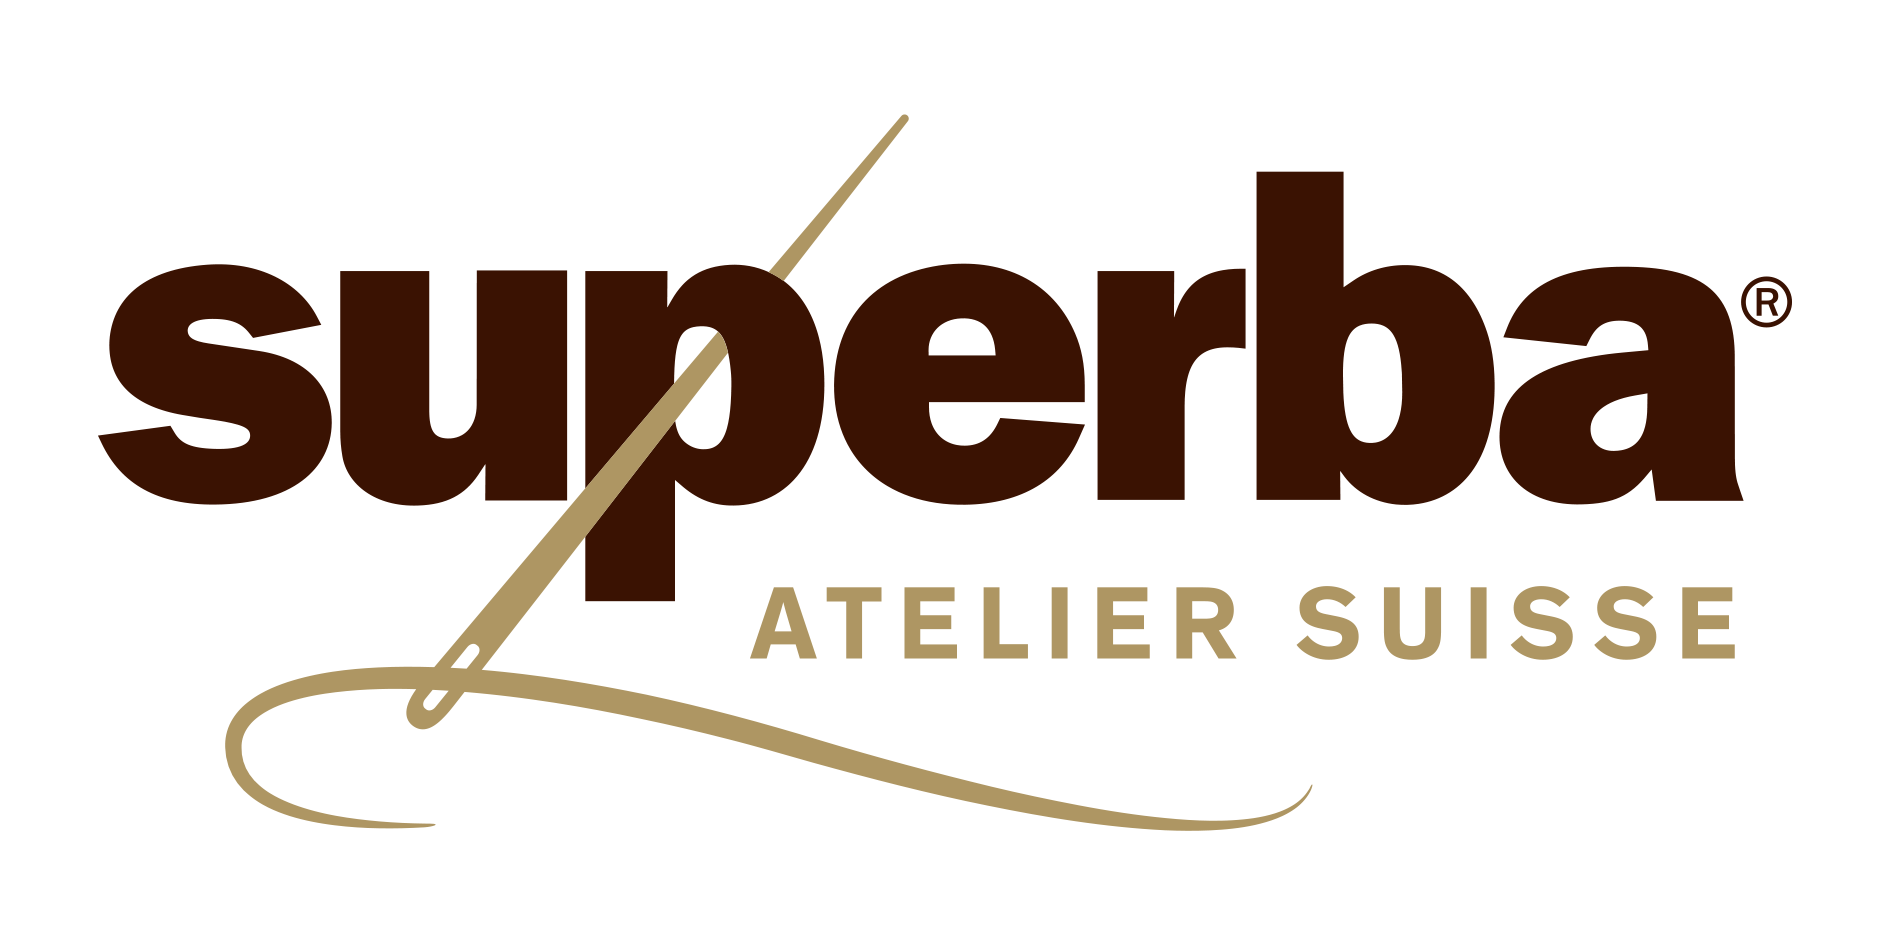 Superba Atelier Suisse